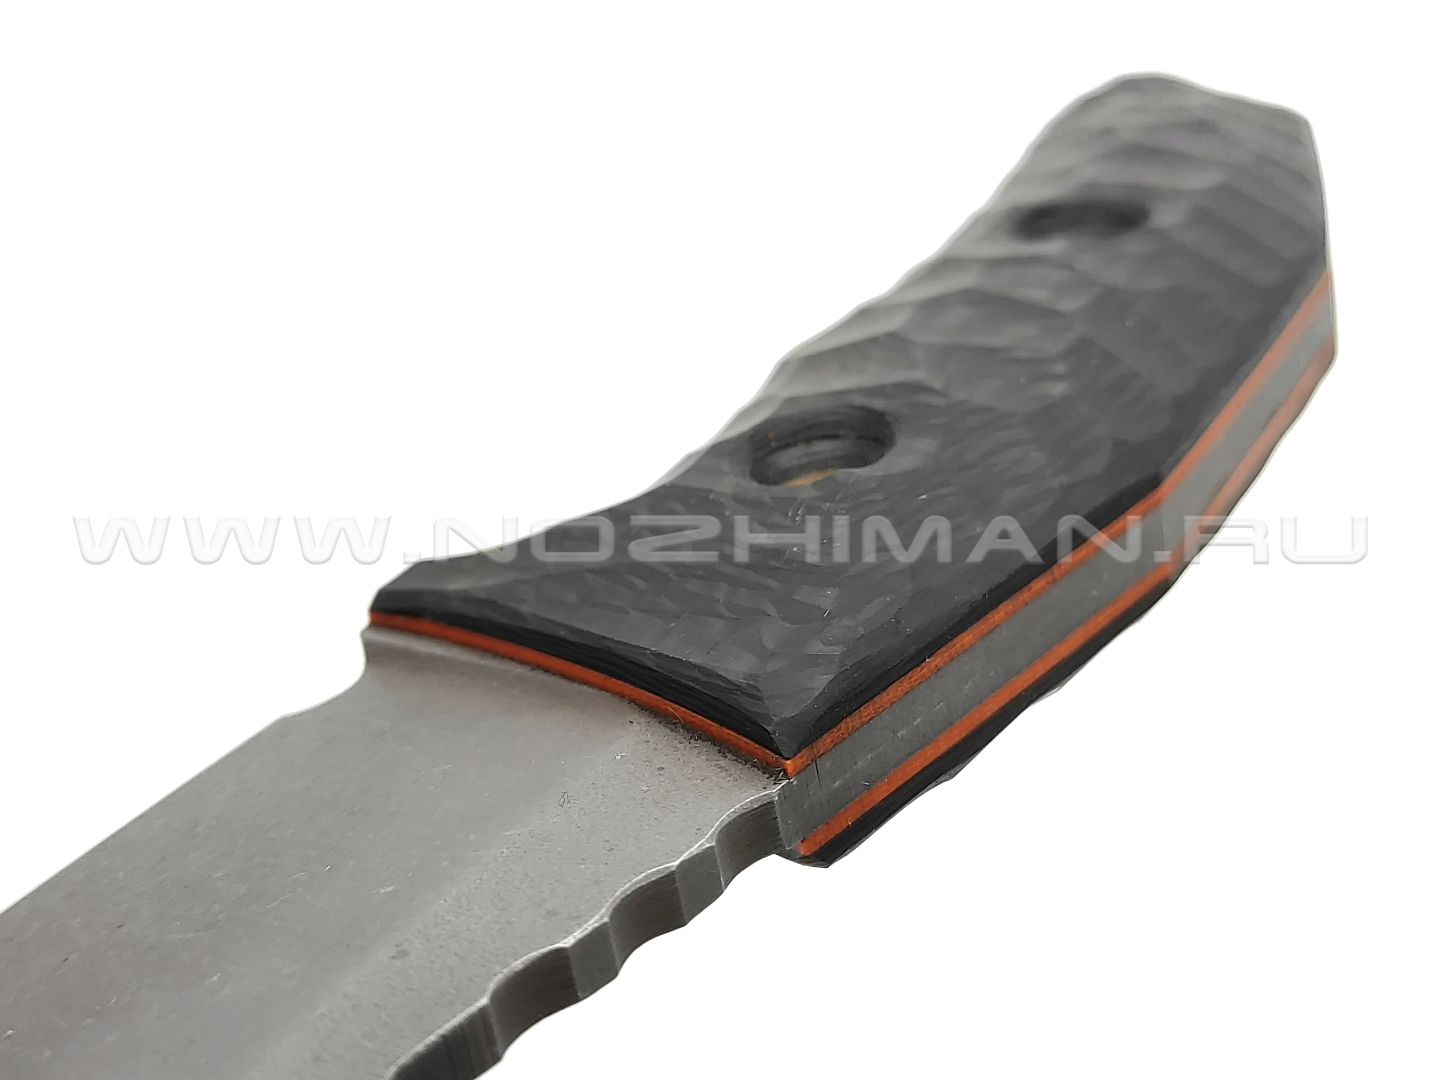 Dyag knives нож Model11_1 сталь N690, рукоять Carbon fiber